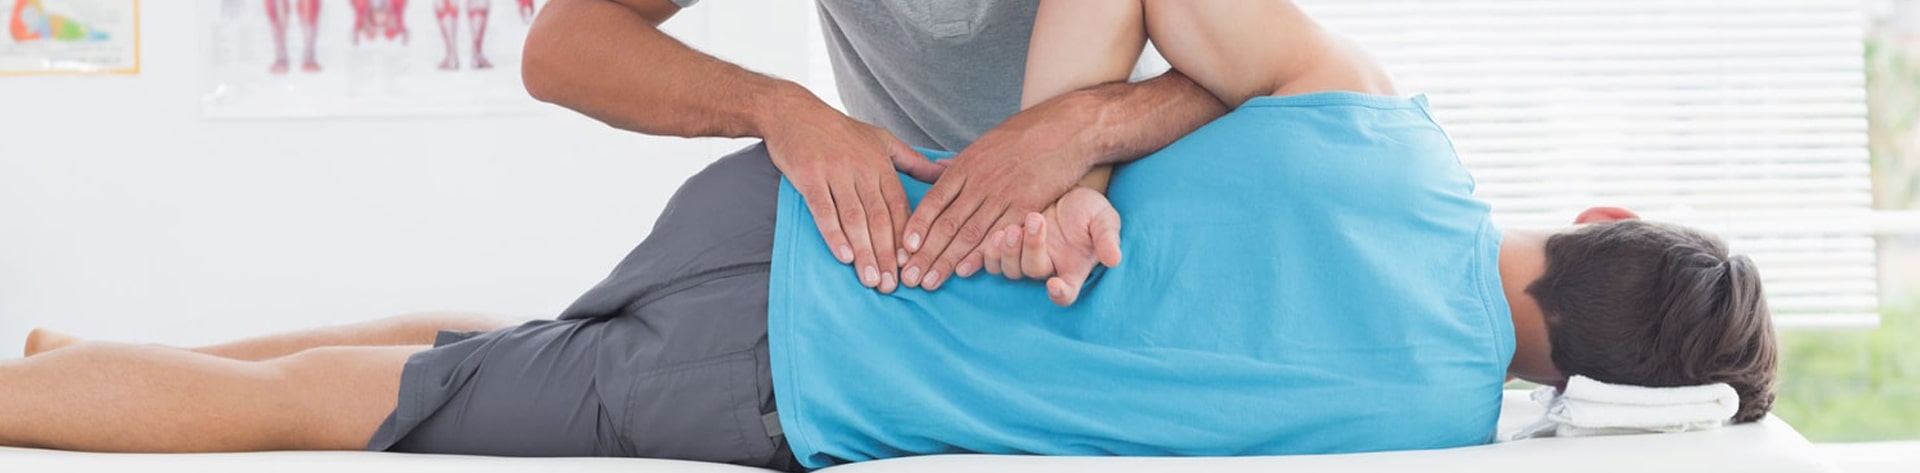 Lower back pain assessment